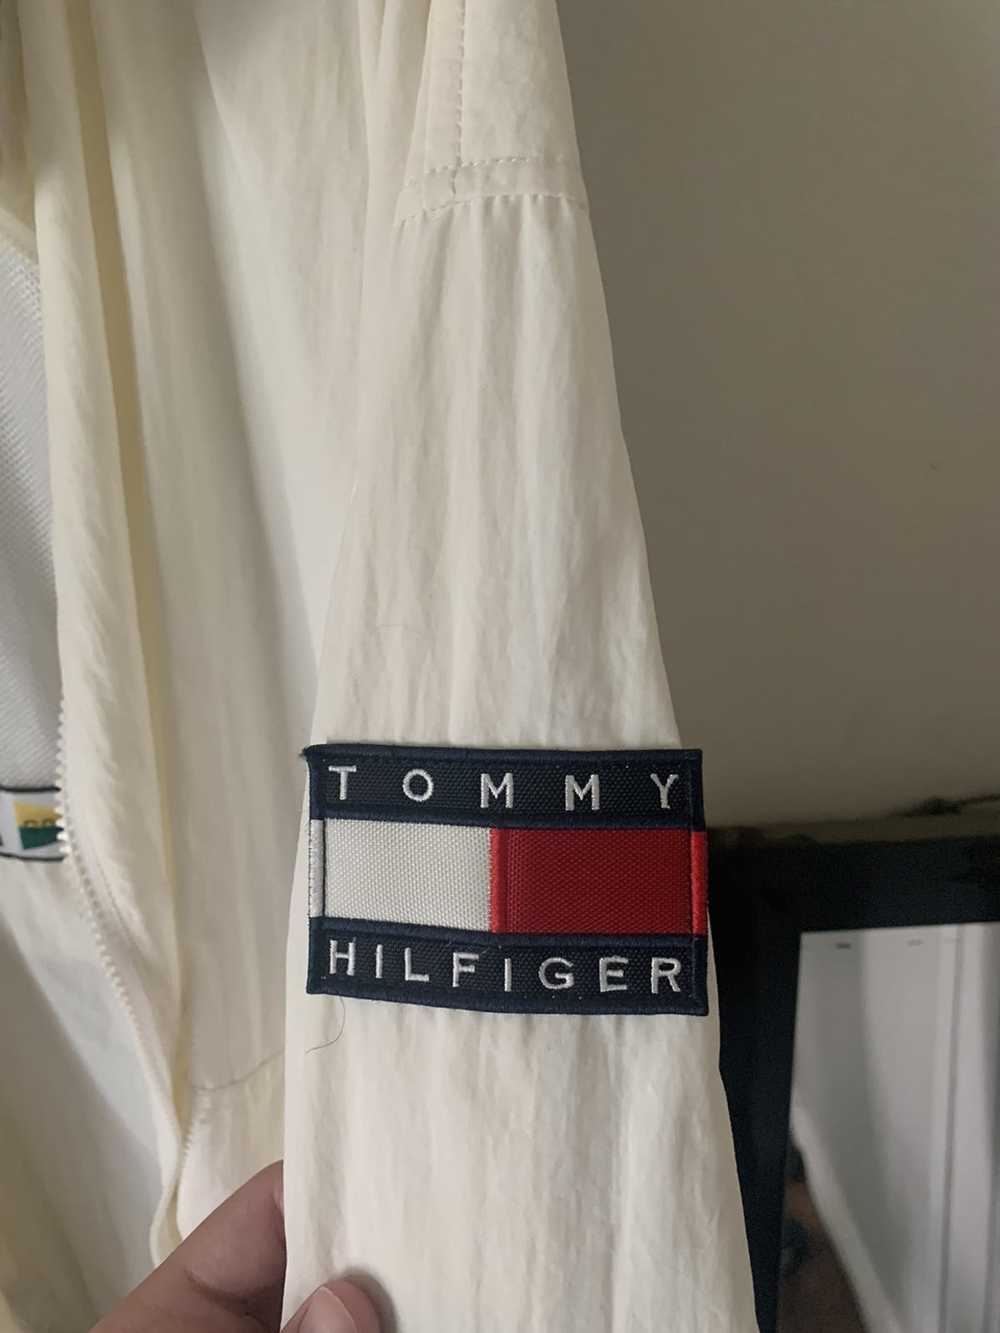 Tommy Hilfiger Vintage Tommy Hilfiger Jacket - image 5